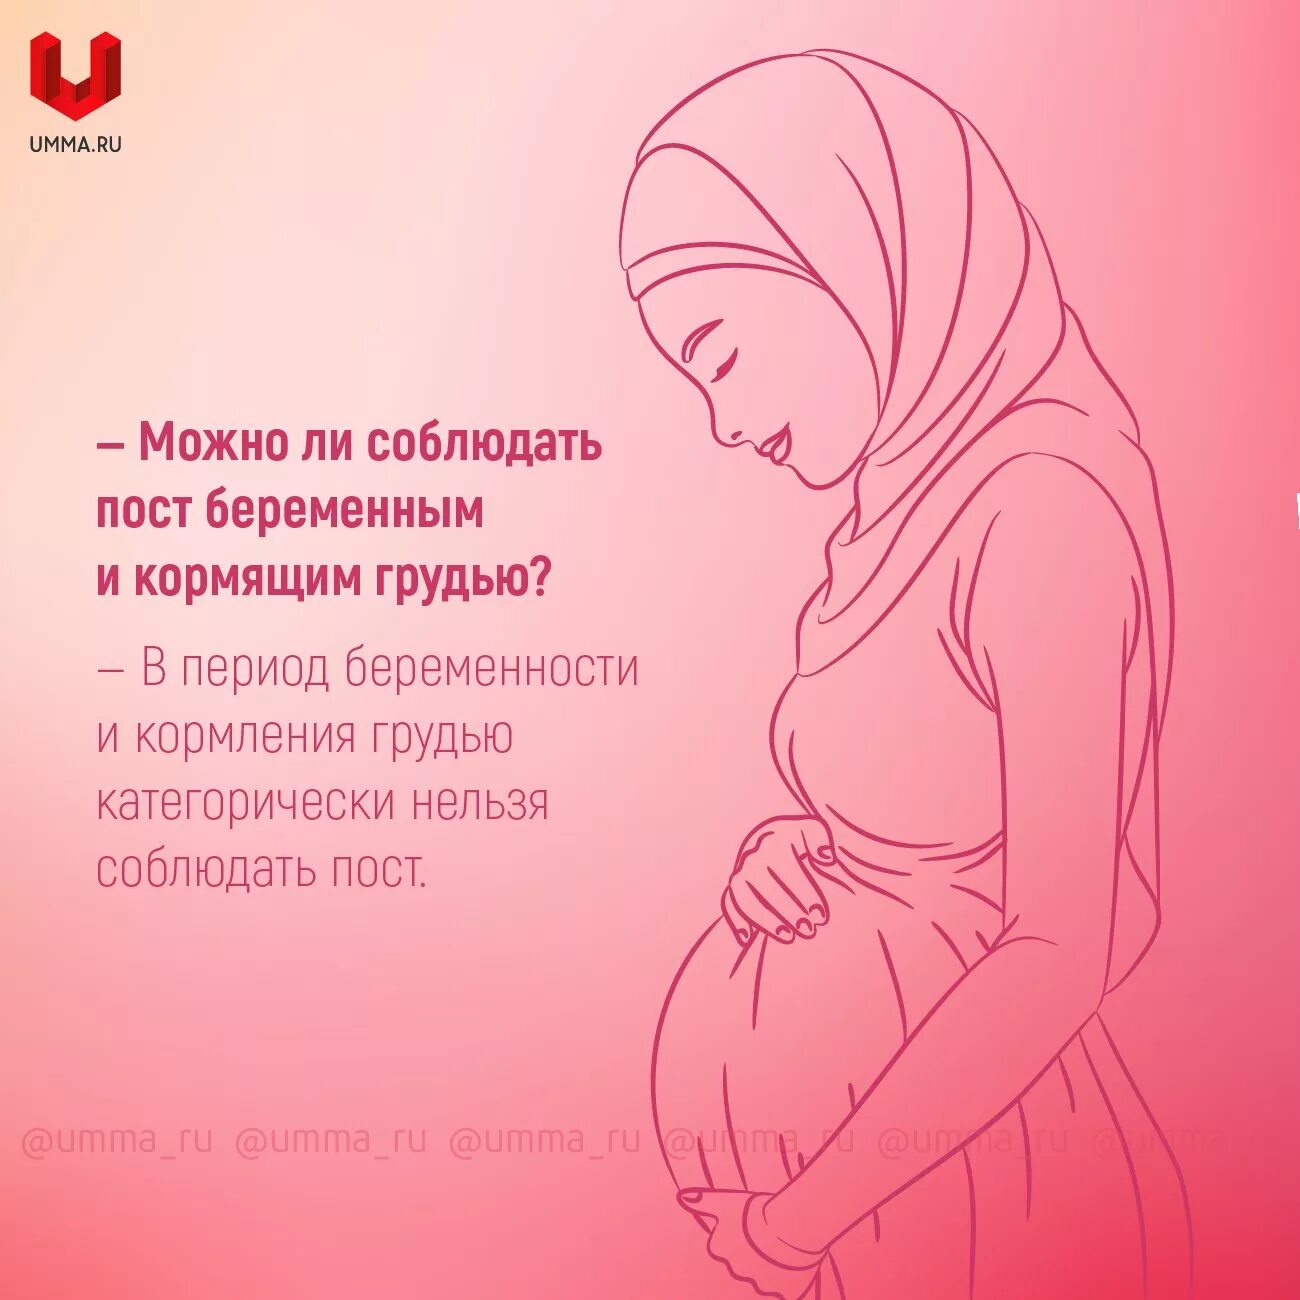 Постятся ли беременные. Про беременных женщин в Исламе. Дуа для кормления грудью. Хадисы про беременных.